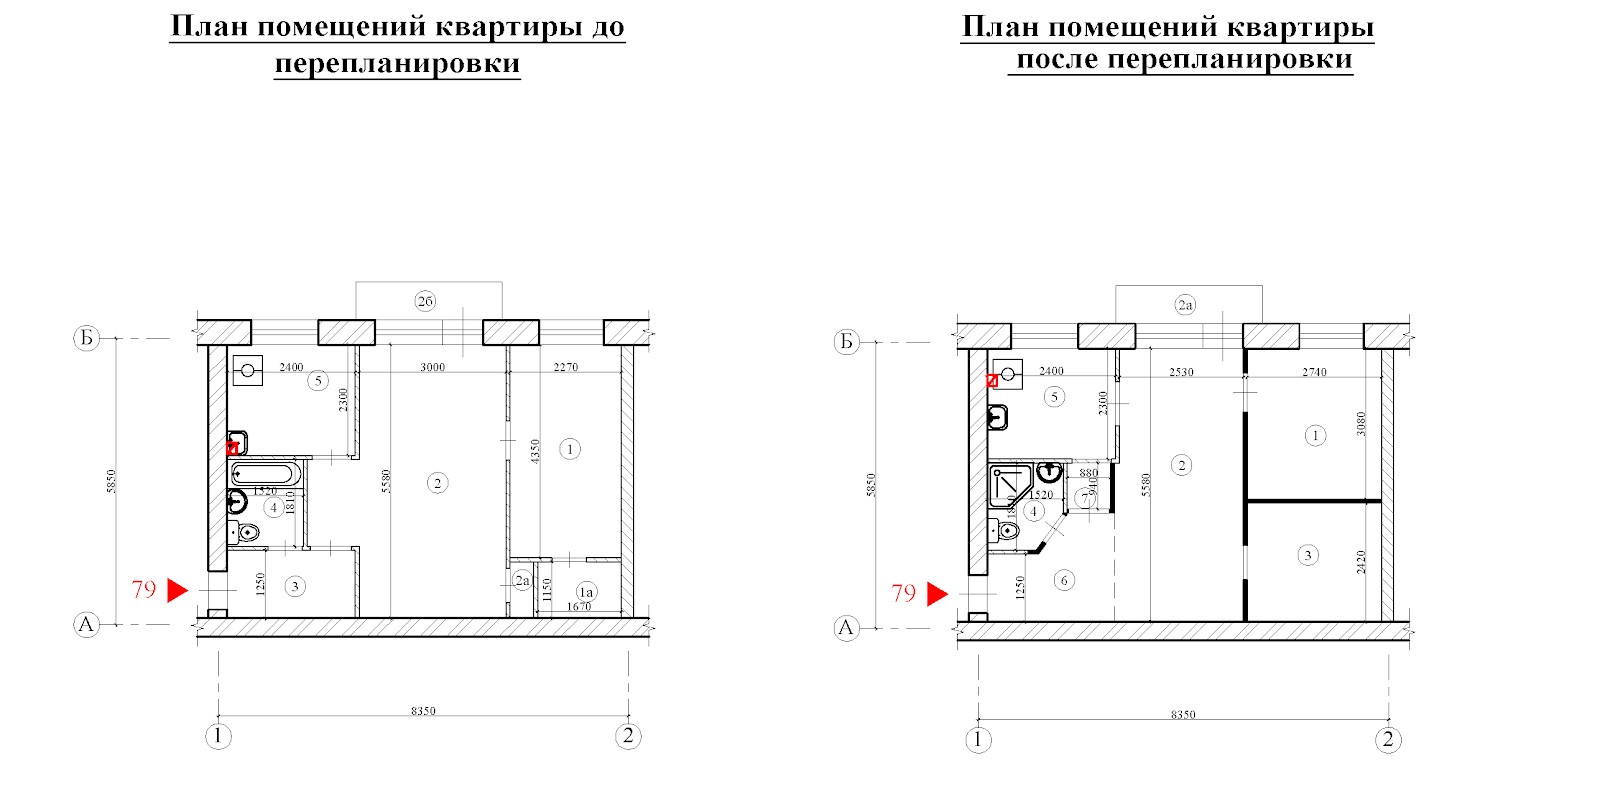 Перепланировка панельной хрущевки (2 комнаты)